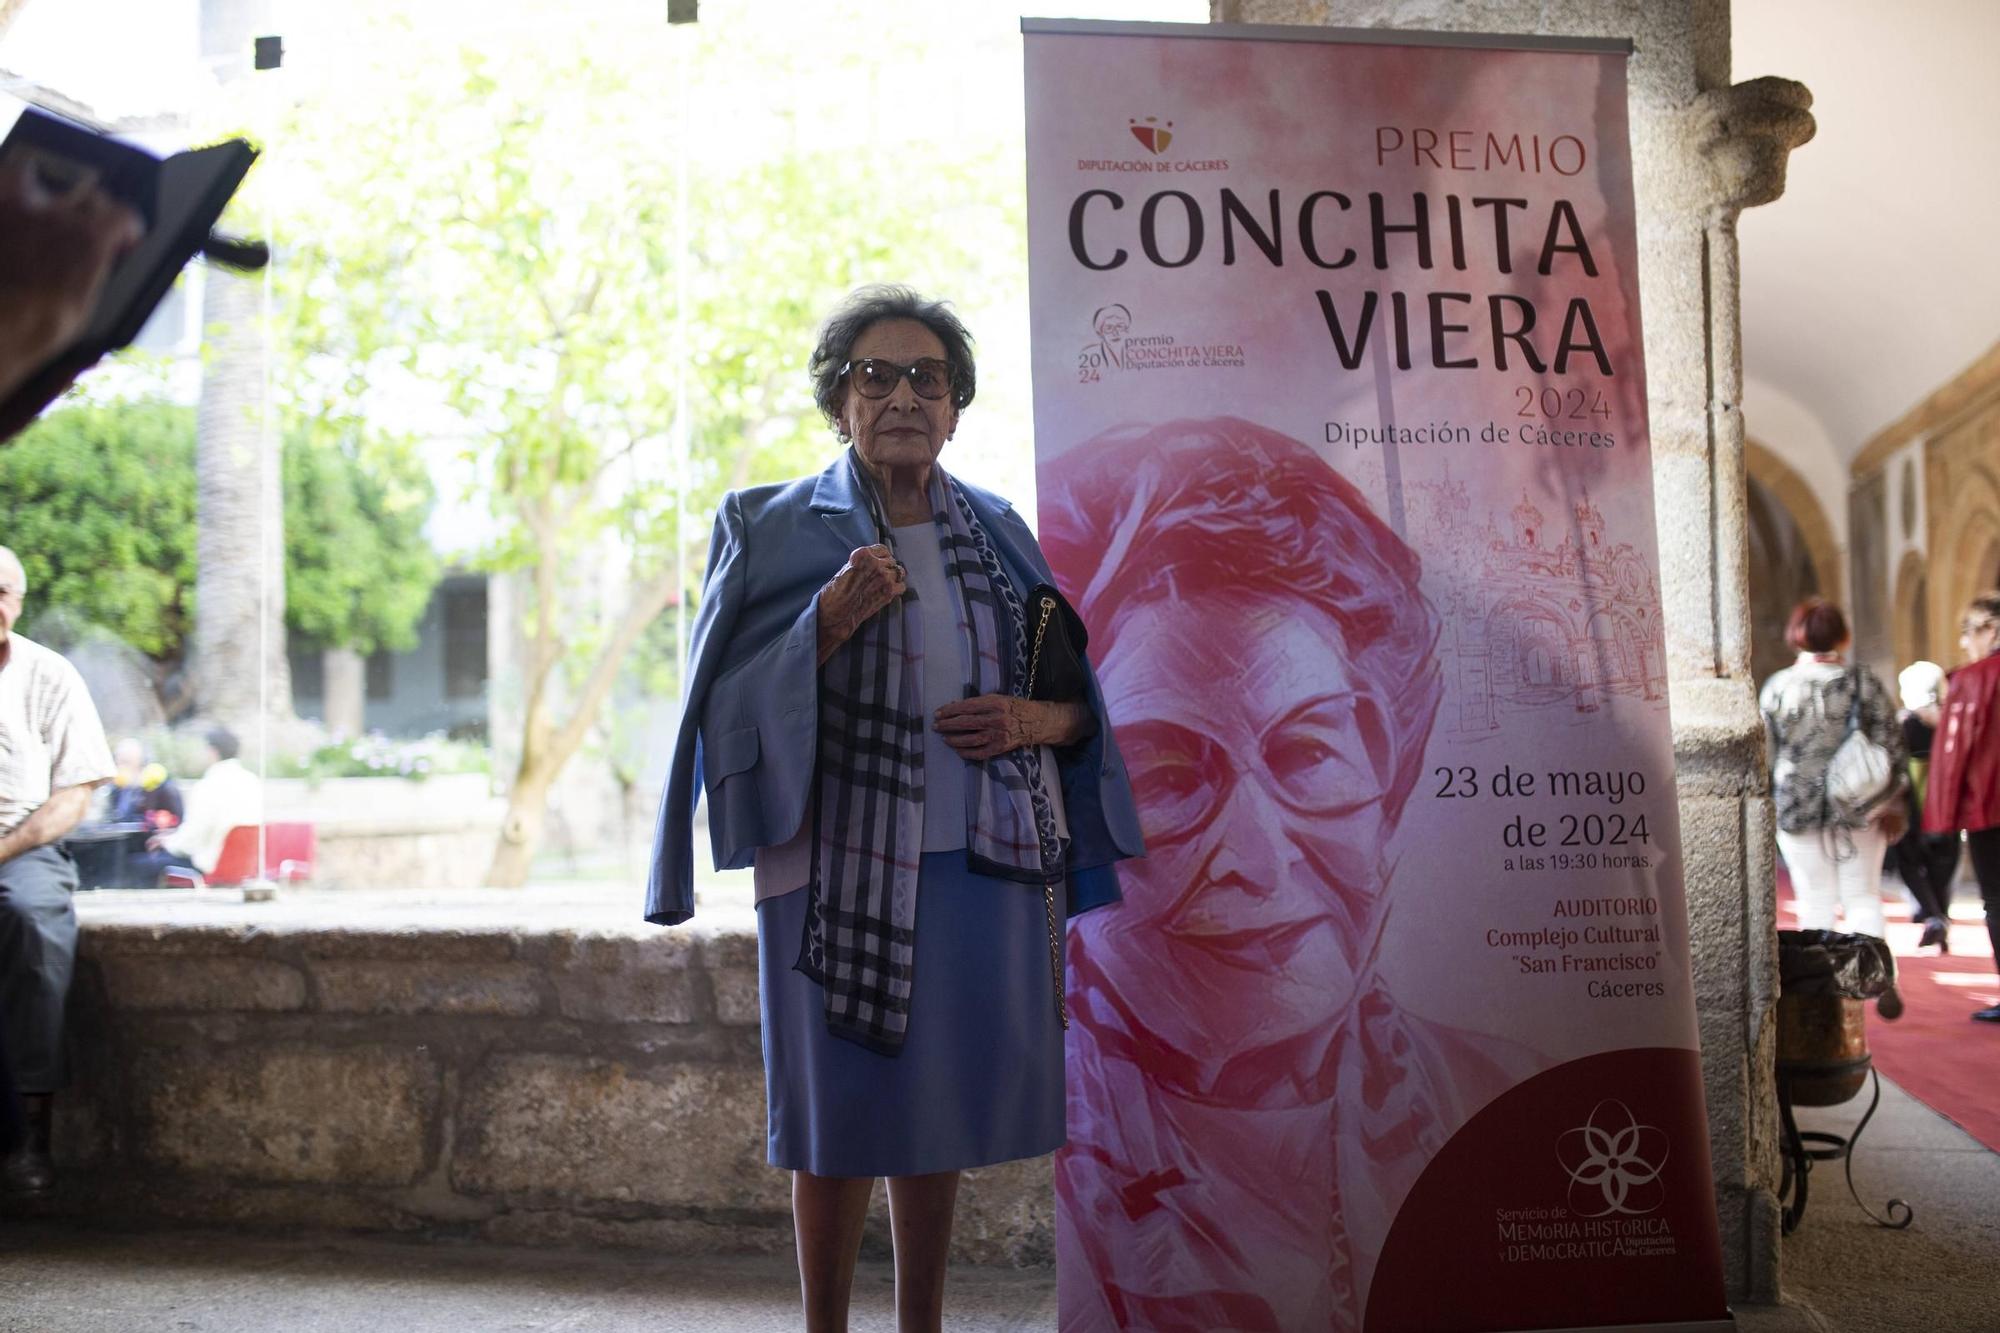 Galería | Así fue la entrega del galardón 'Conchita Viera' en Cáceres